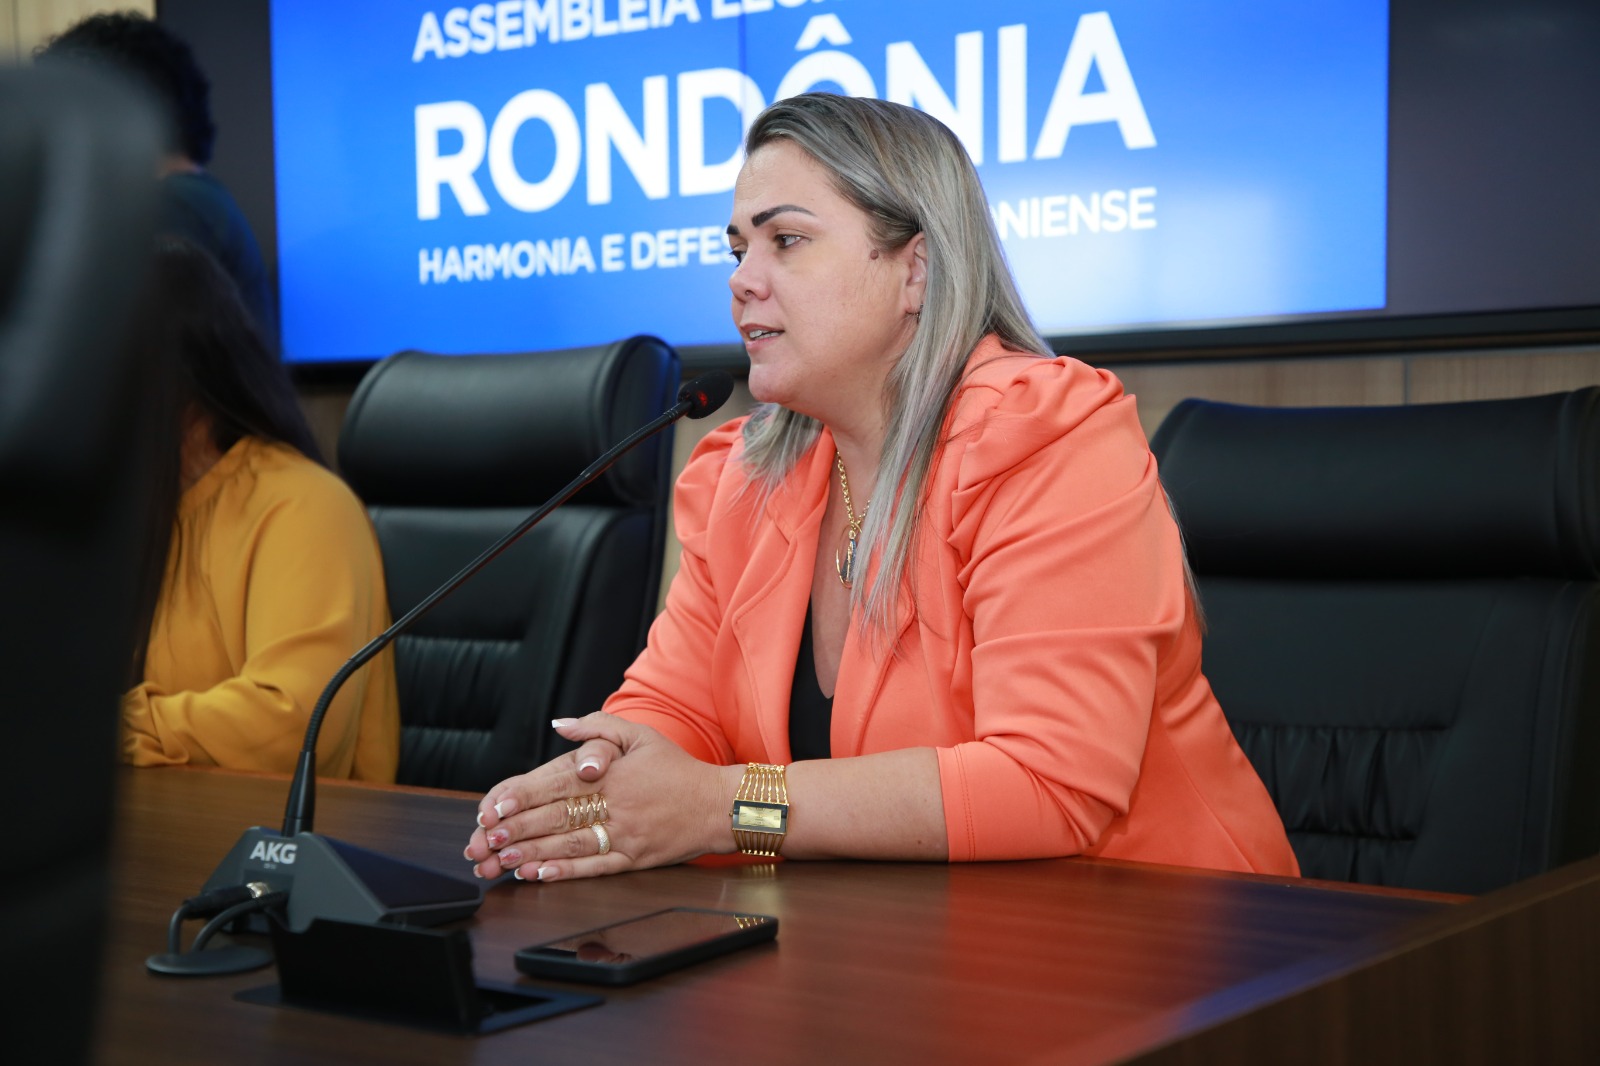 Cláudia de Jesus busca informações sobre exames de ressonância magnética em Rondônia